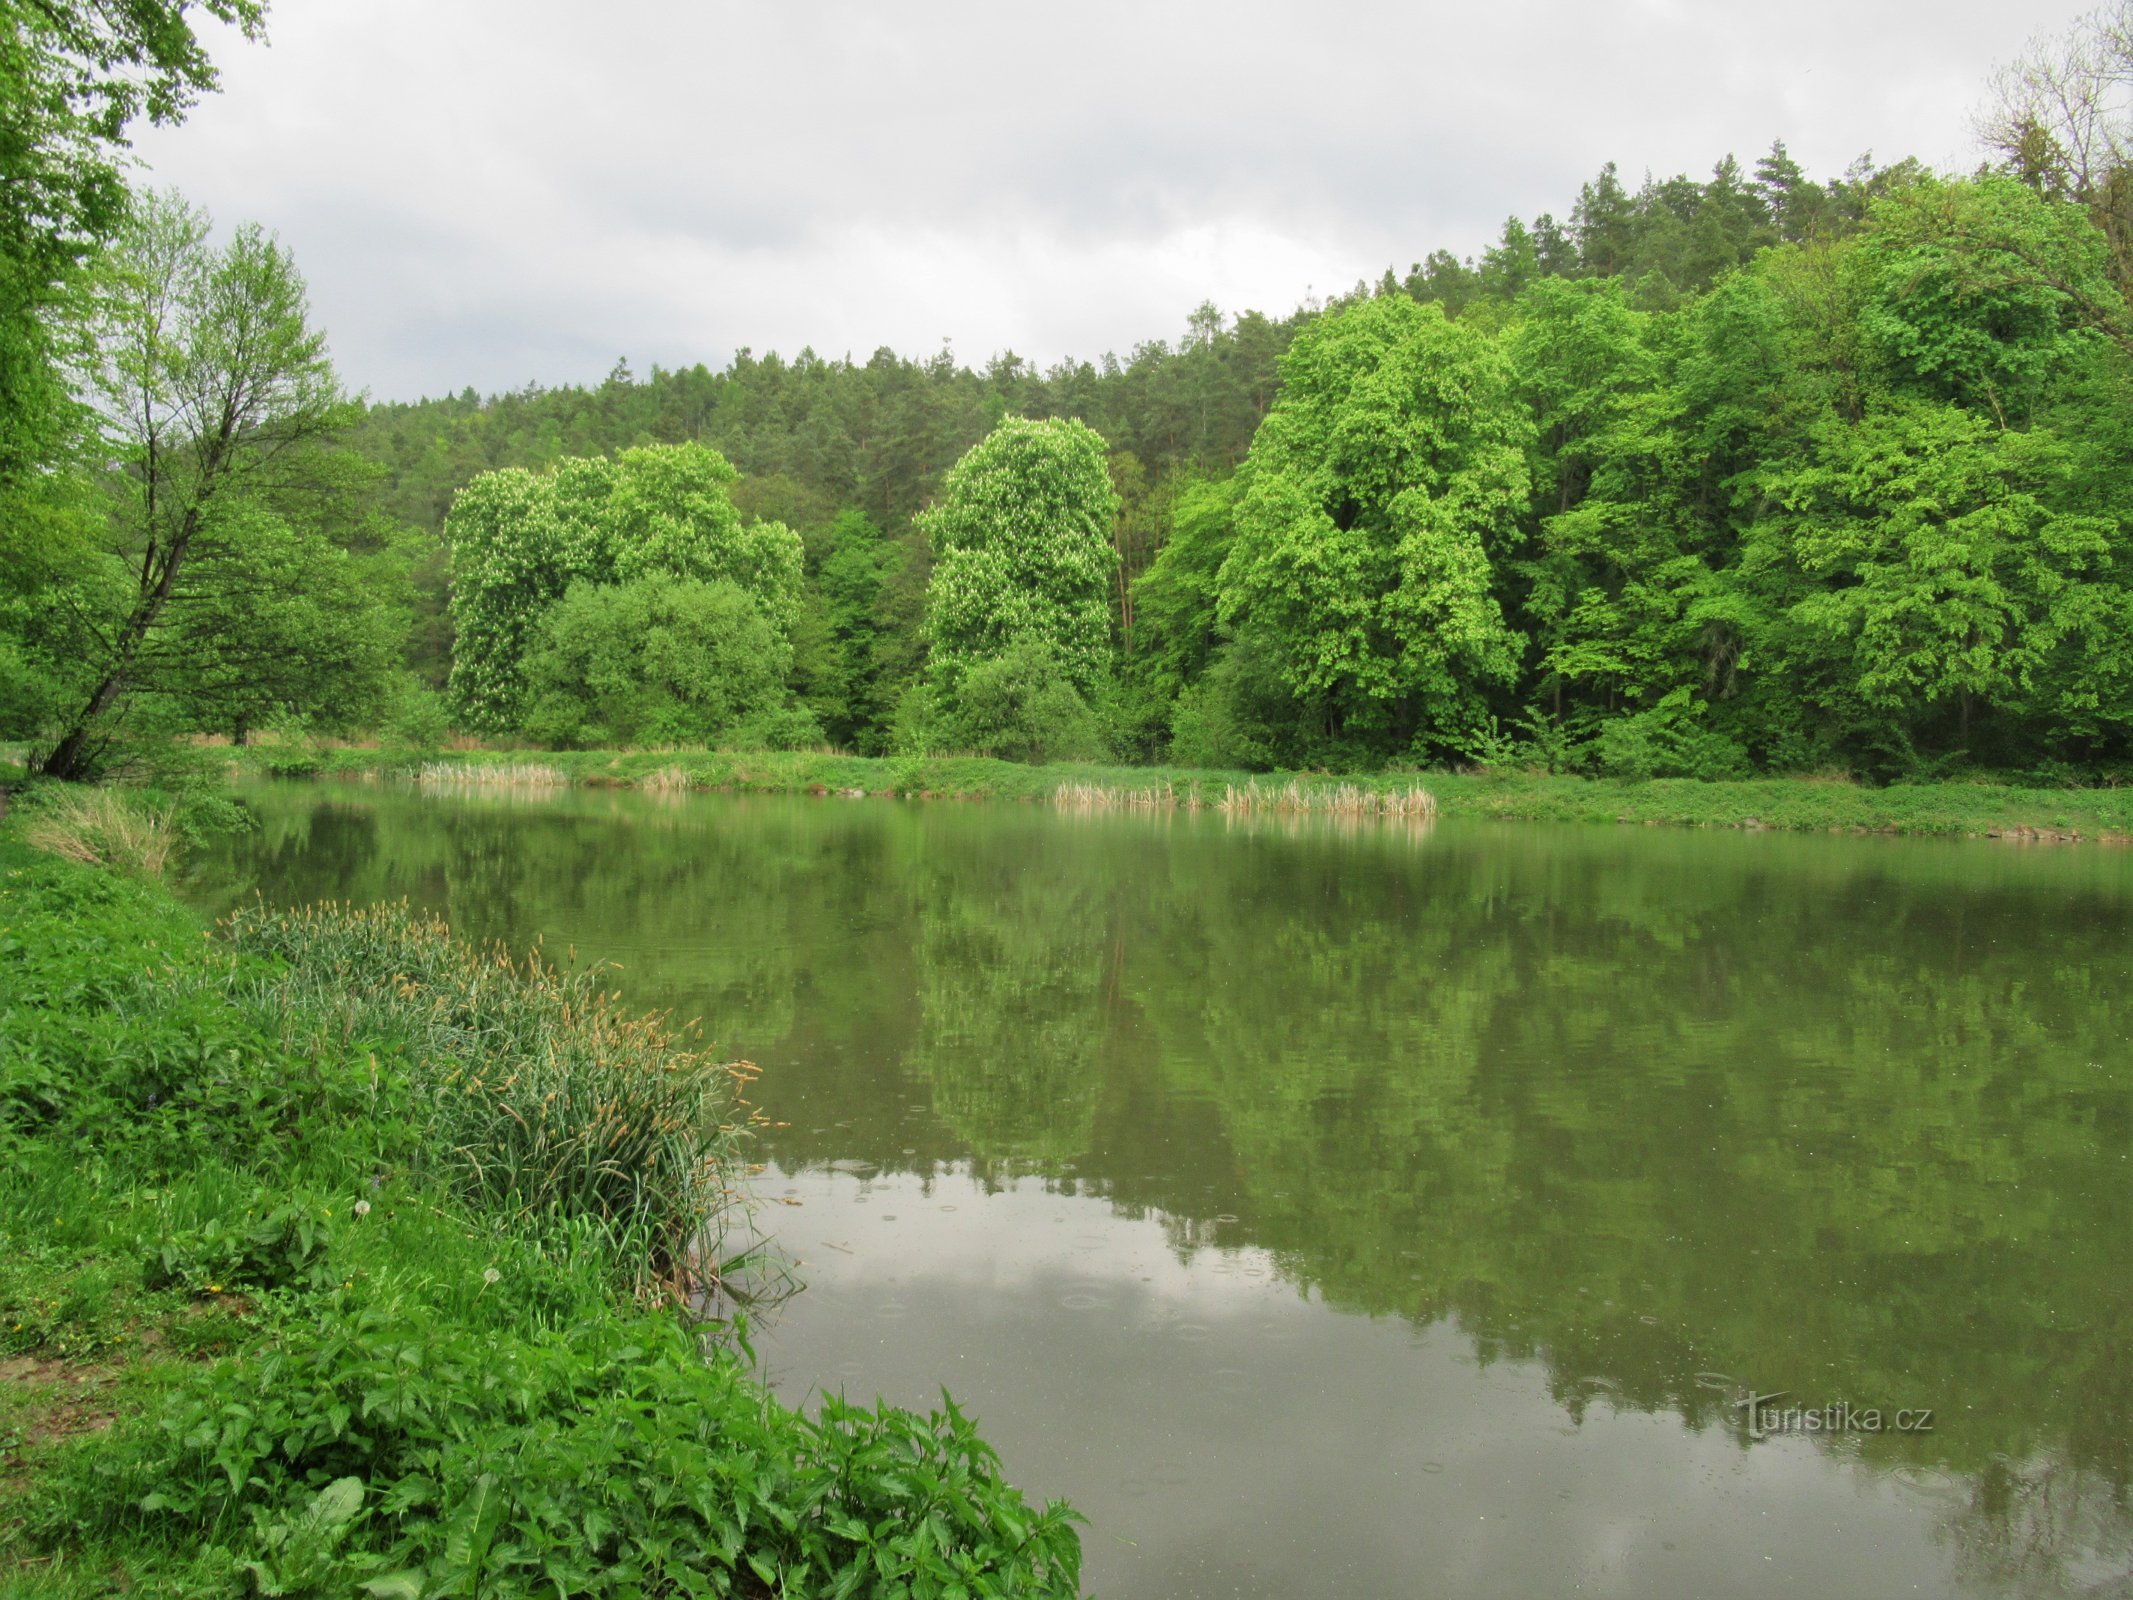 Ponávka 的池塘